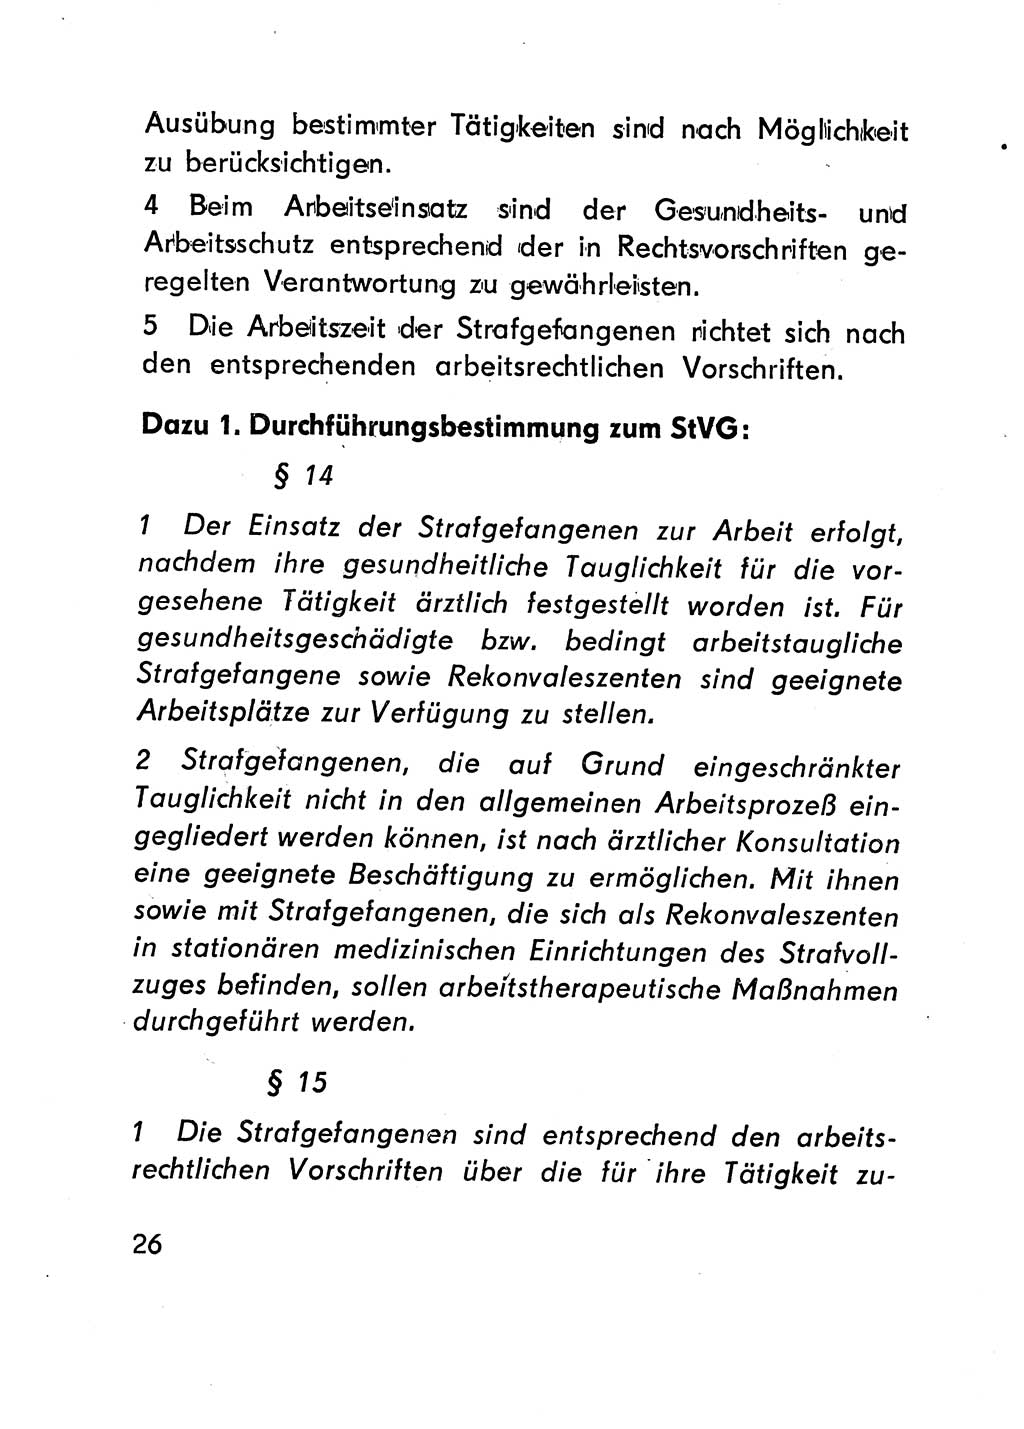 Gesetz über den Vollzug der Strafen mit Freiheitsentzug (Strafvollzugsgesetz) - StVG - [Deutsche Demokratische Republik (DDR)] 1977, Seite 26 (StVG DDR 1977, S. 26)